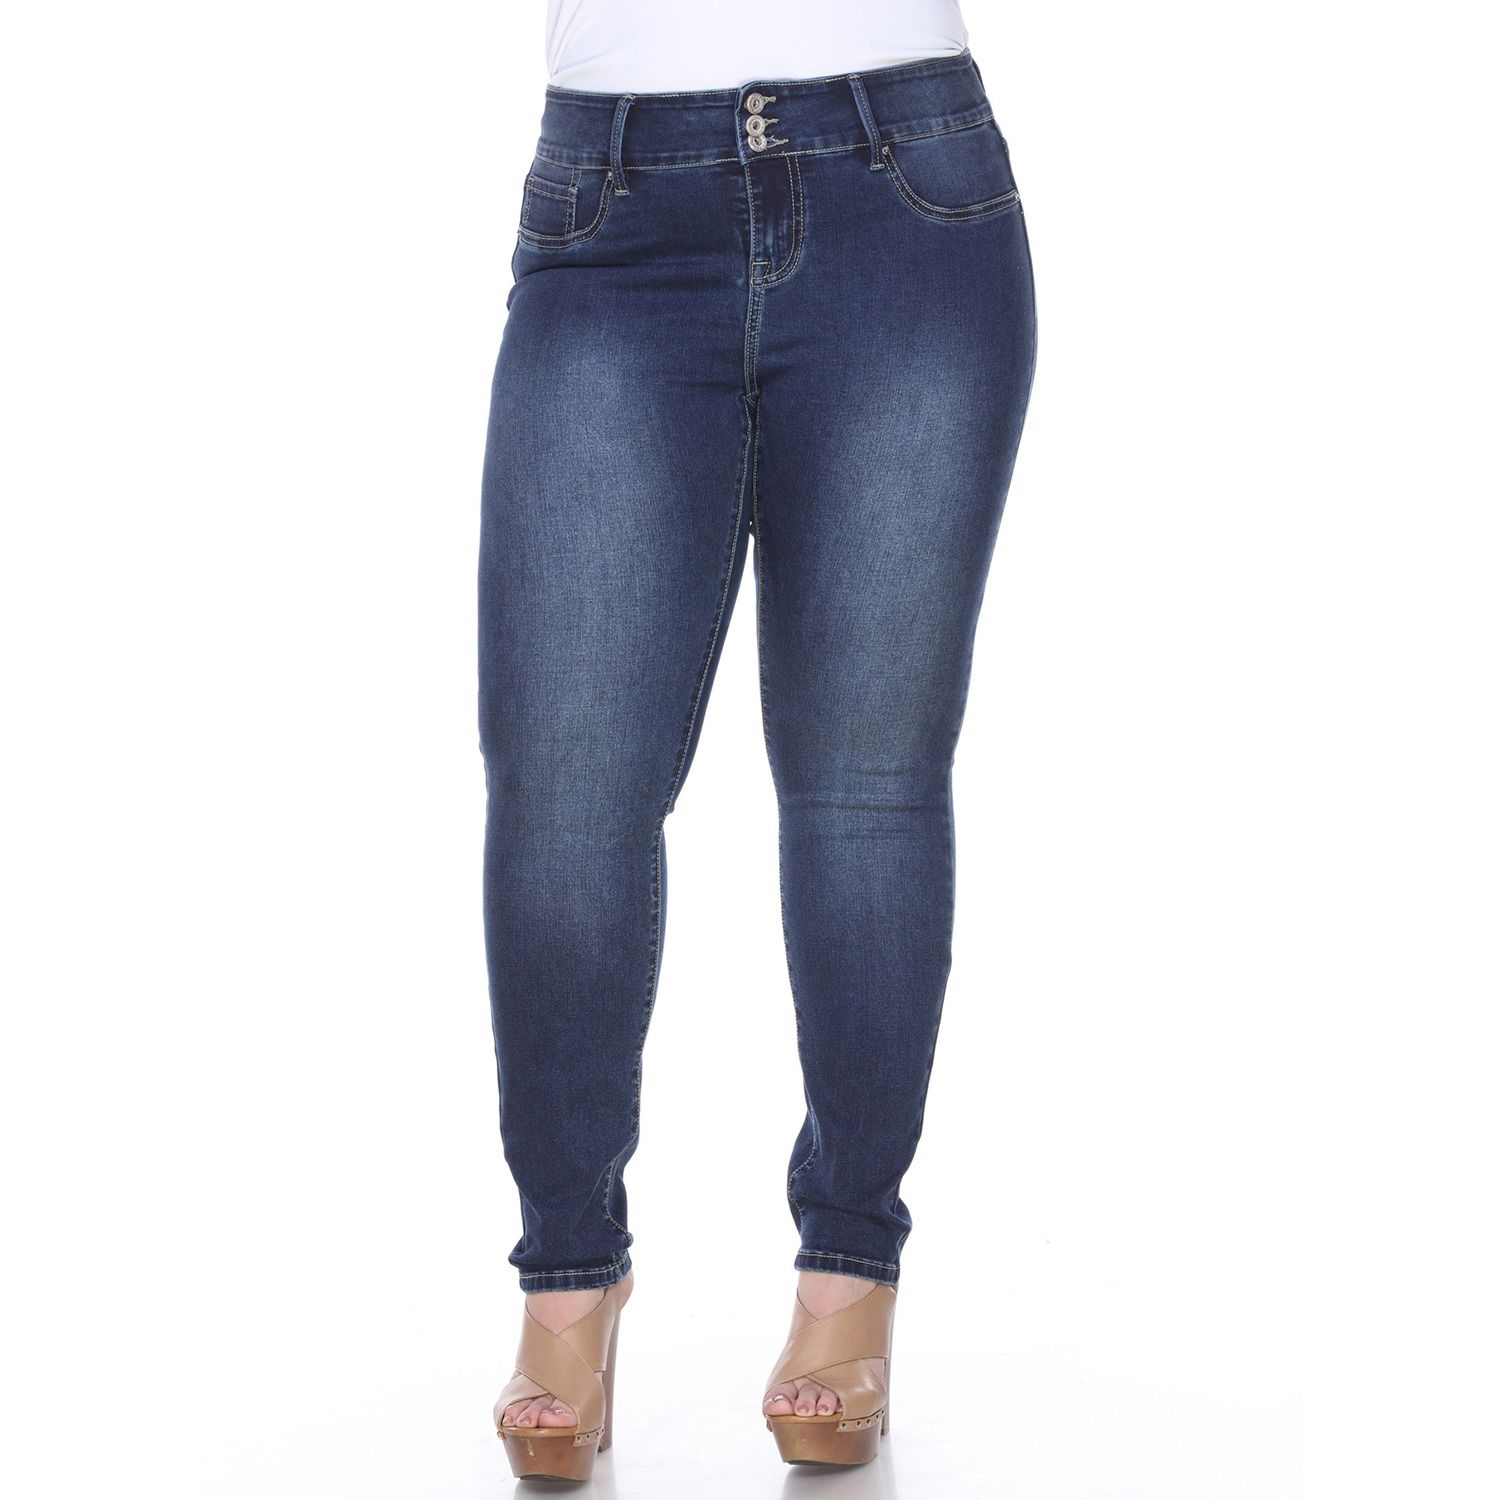 stretch skinny jeans plus size